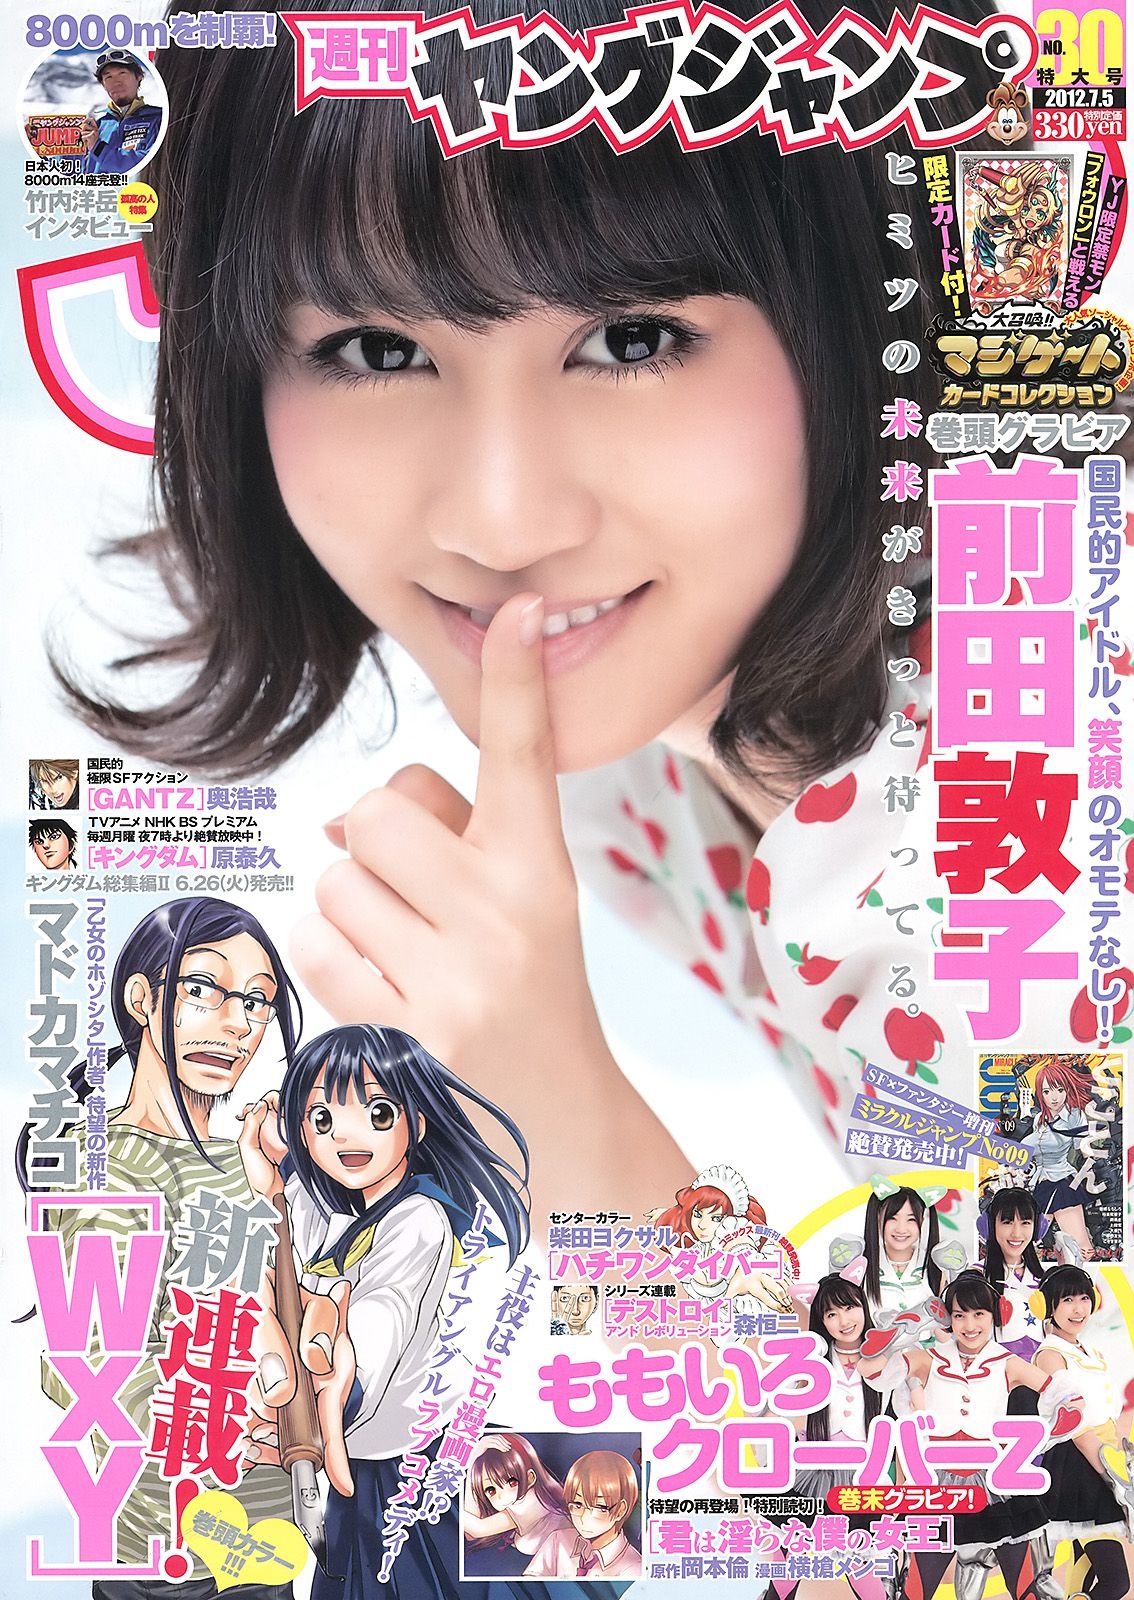 前田敦子 ももいろクローバーZ [Weekly Young Jump] 2012年No.30 写真杂志  第-1张